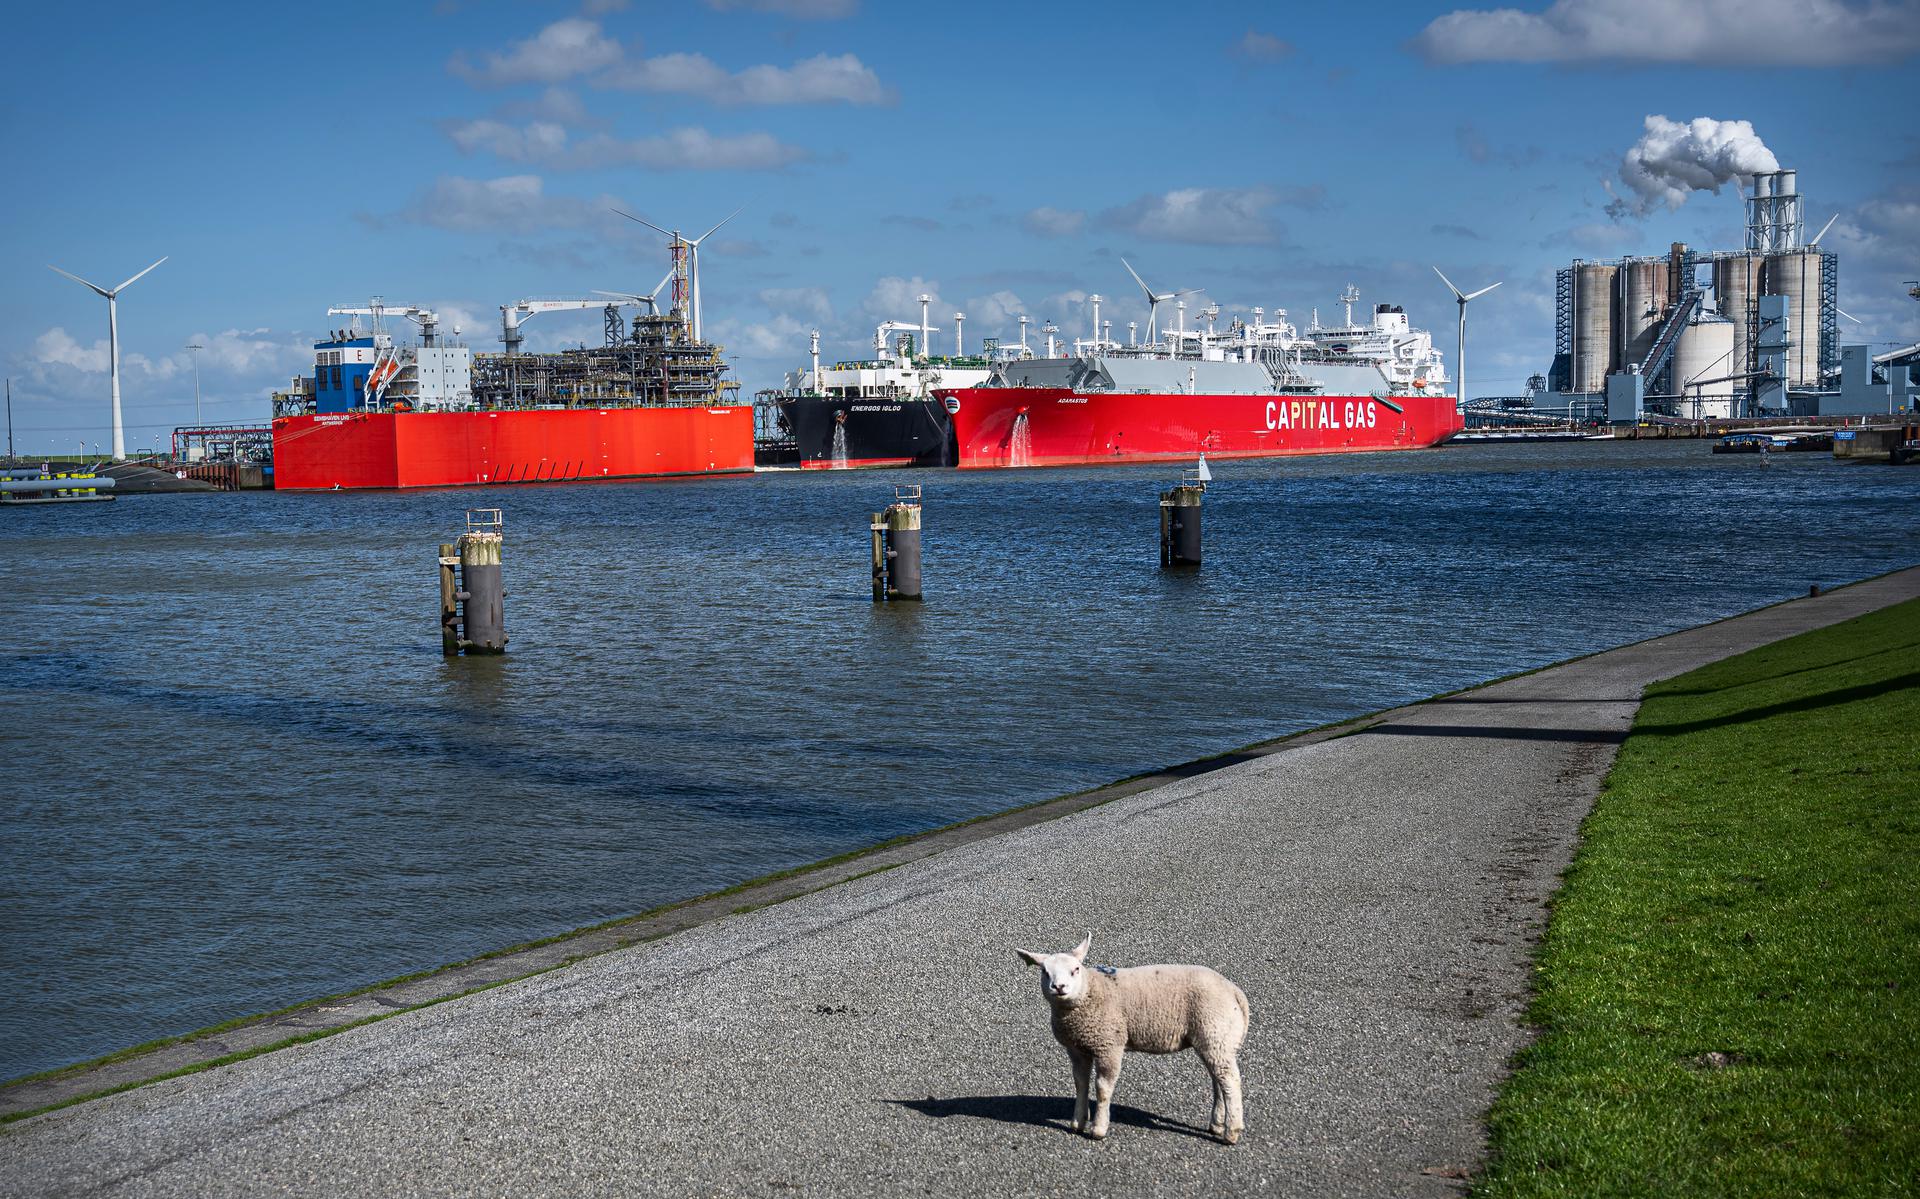 Een Amerikaanse LNG-tanker meert af bij de LNG-terminal in de Eemshaven. De Adamastos brengt 174.000 kuub LNG naar Nederland. De terminal in de Eemshaven is van groot belang voor de energievoorziening, niet alleen voor Nederland maar ook andere landen in West-Europa.